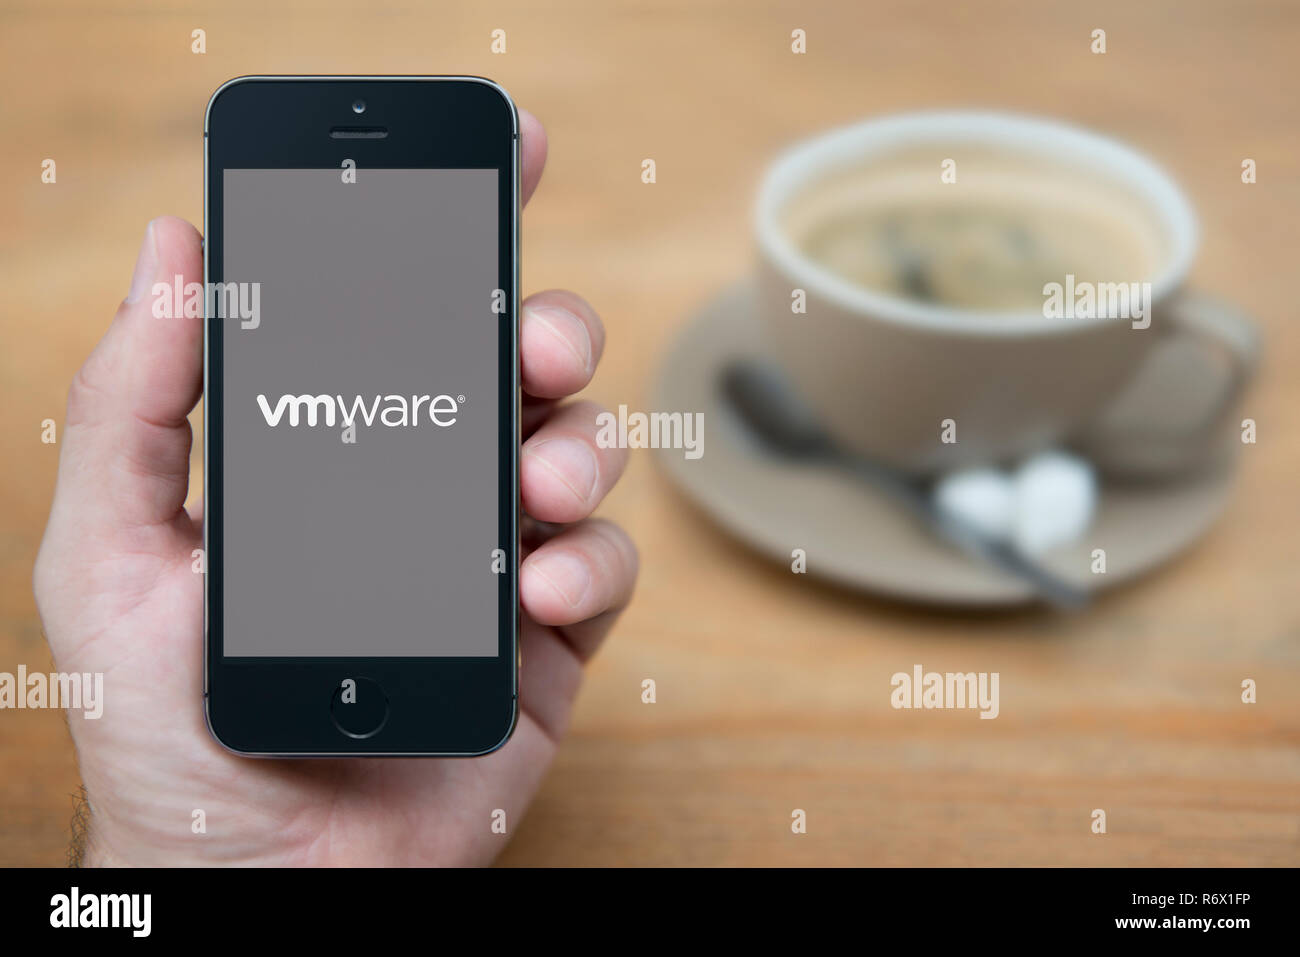 Un uomo guarda al suo iPhone che visualizza le VM Ware logo (solo uso editoriale). Foto Stock